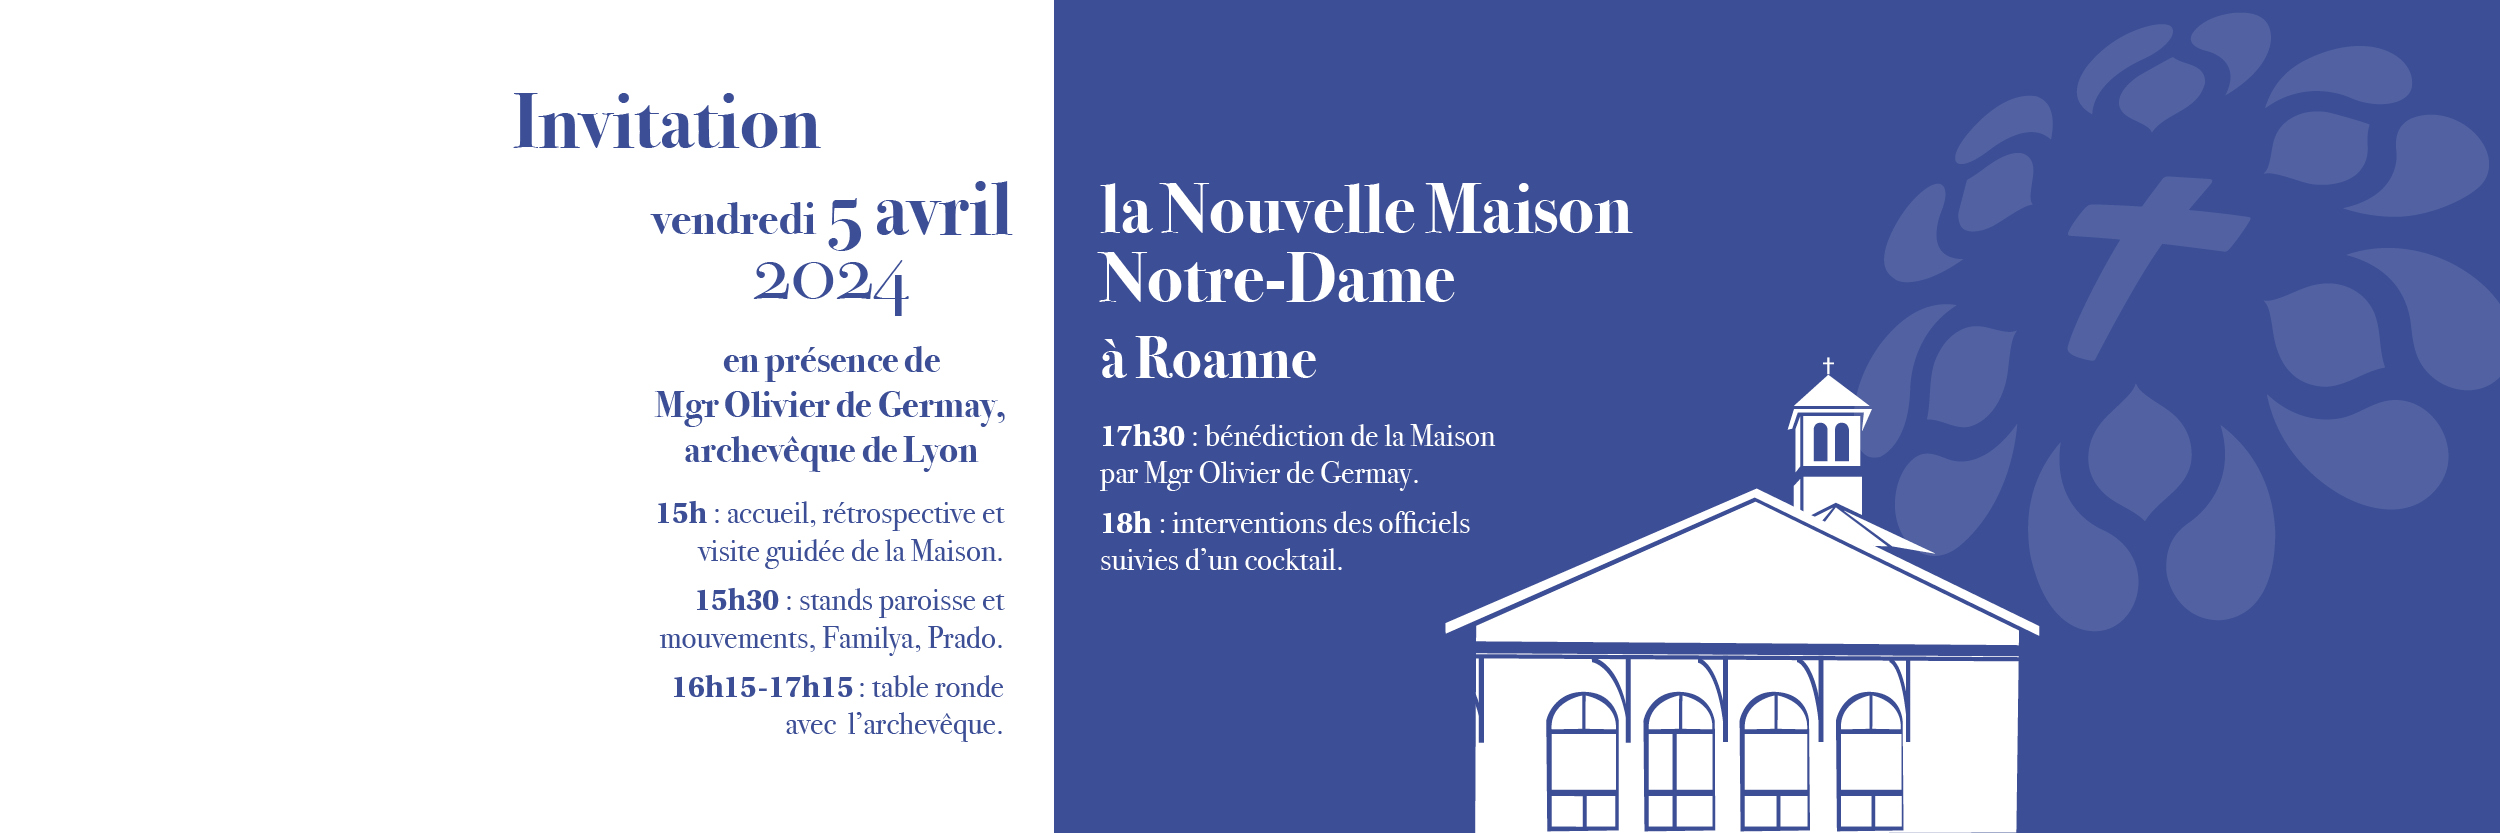 Inauguration de la nouvelle maison Notre-Dame  à Roanne